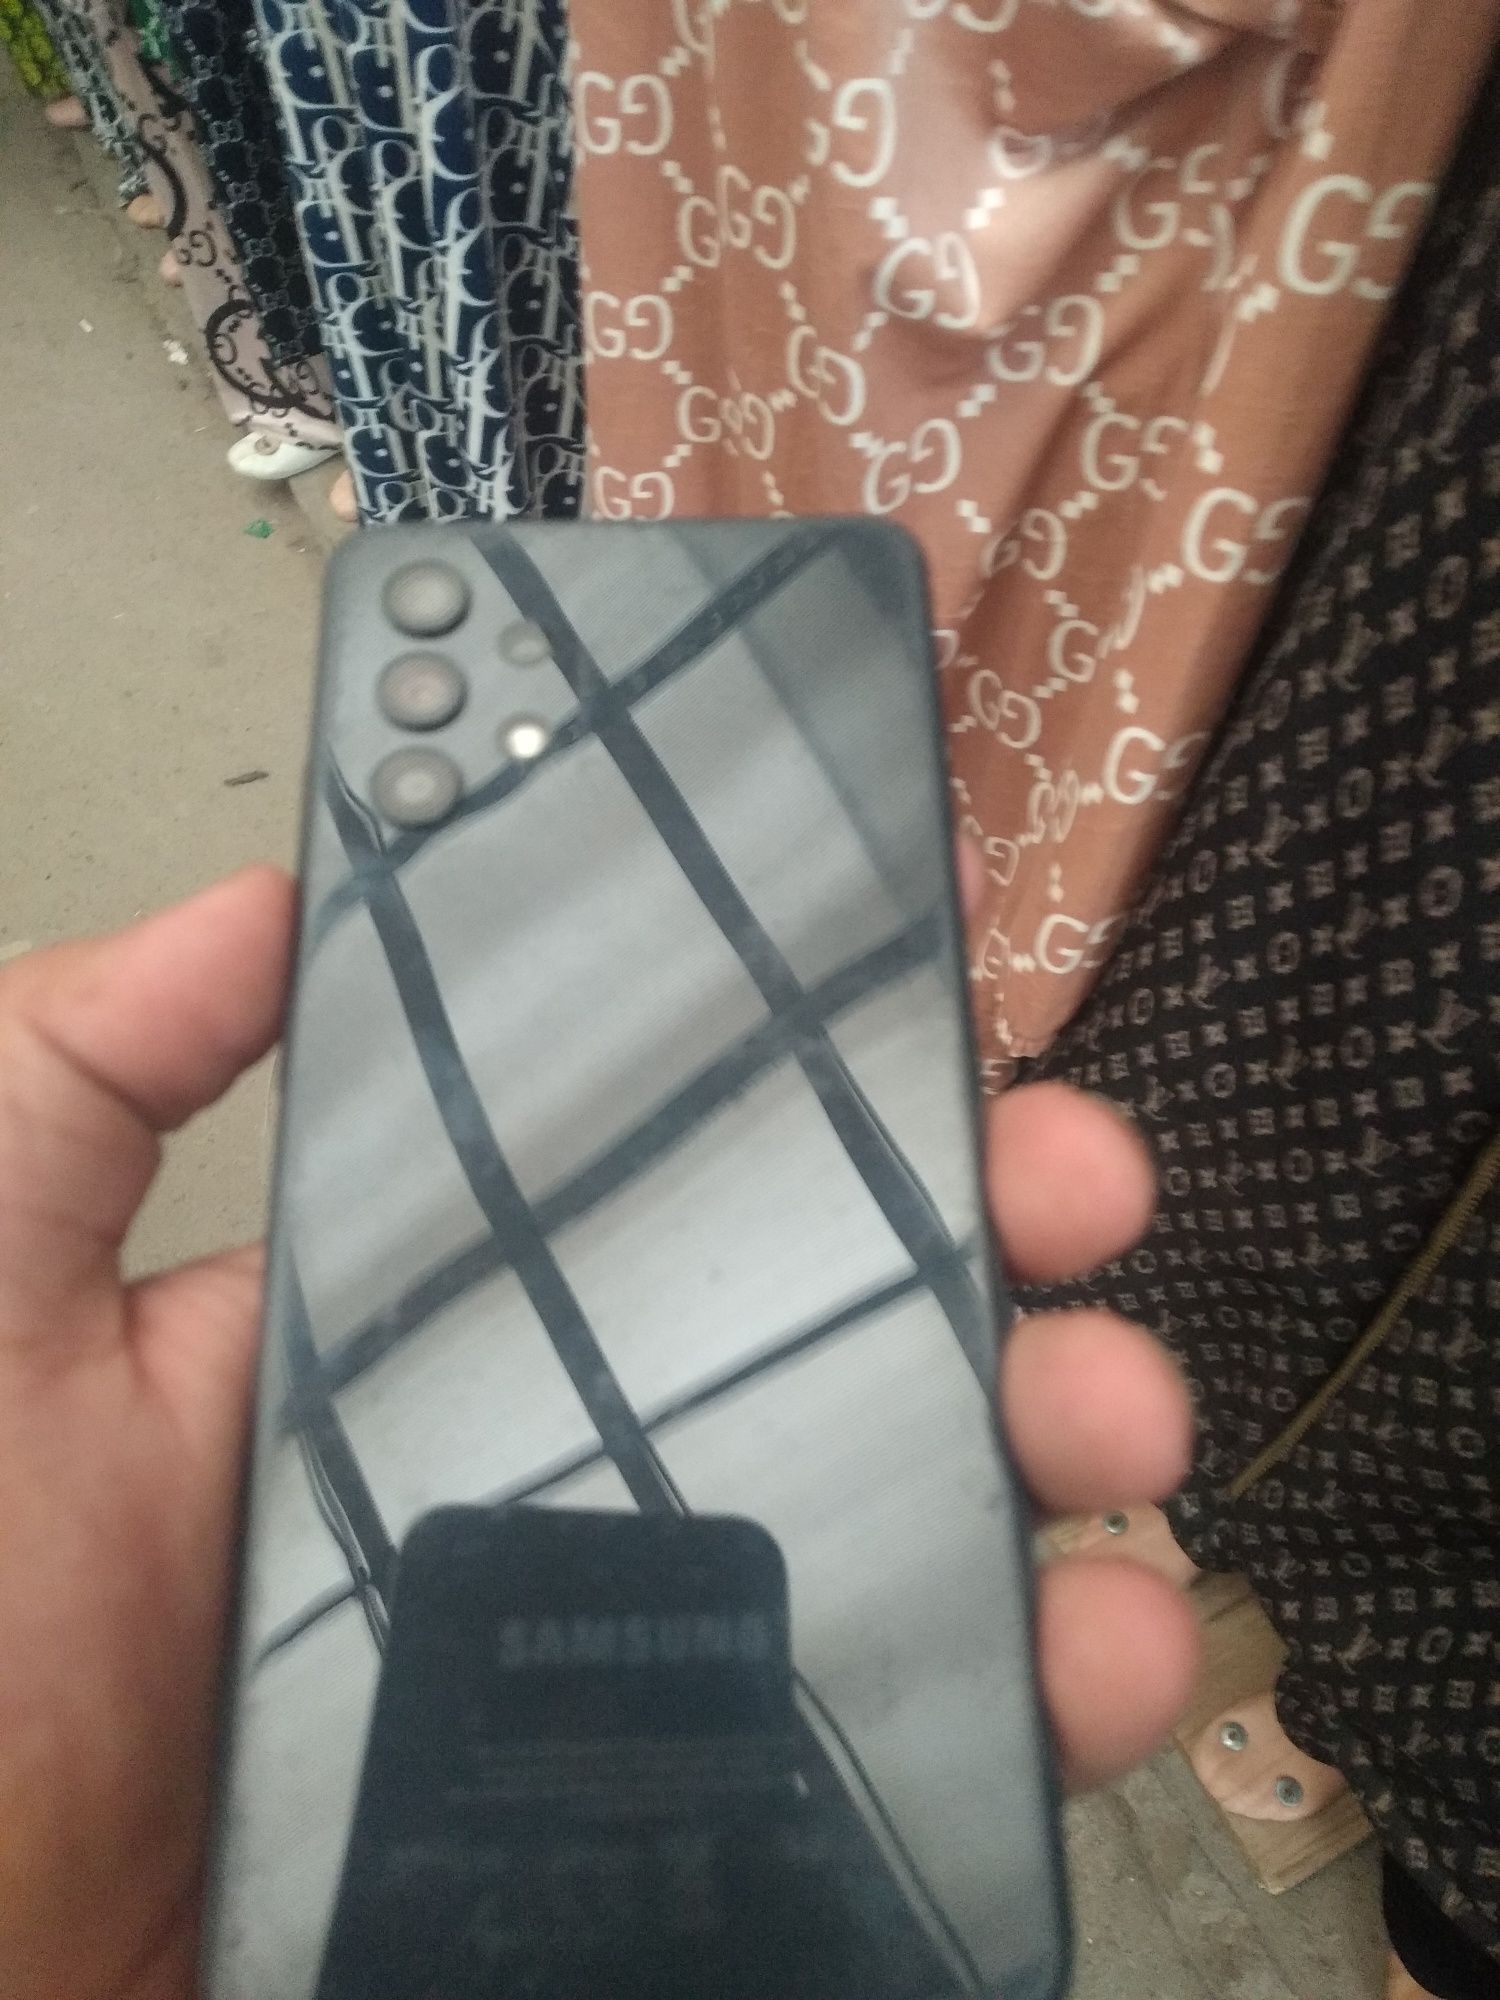 Samsung galaxy a32